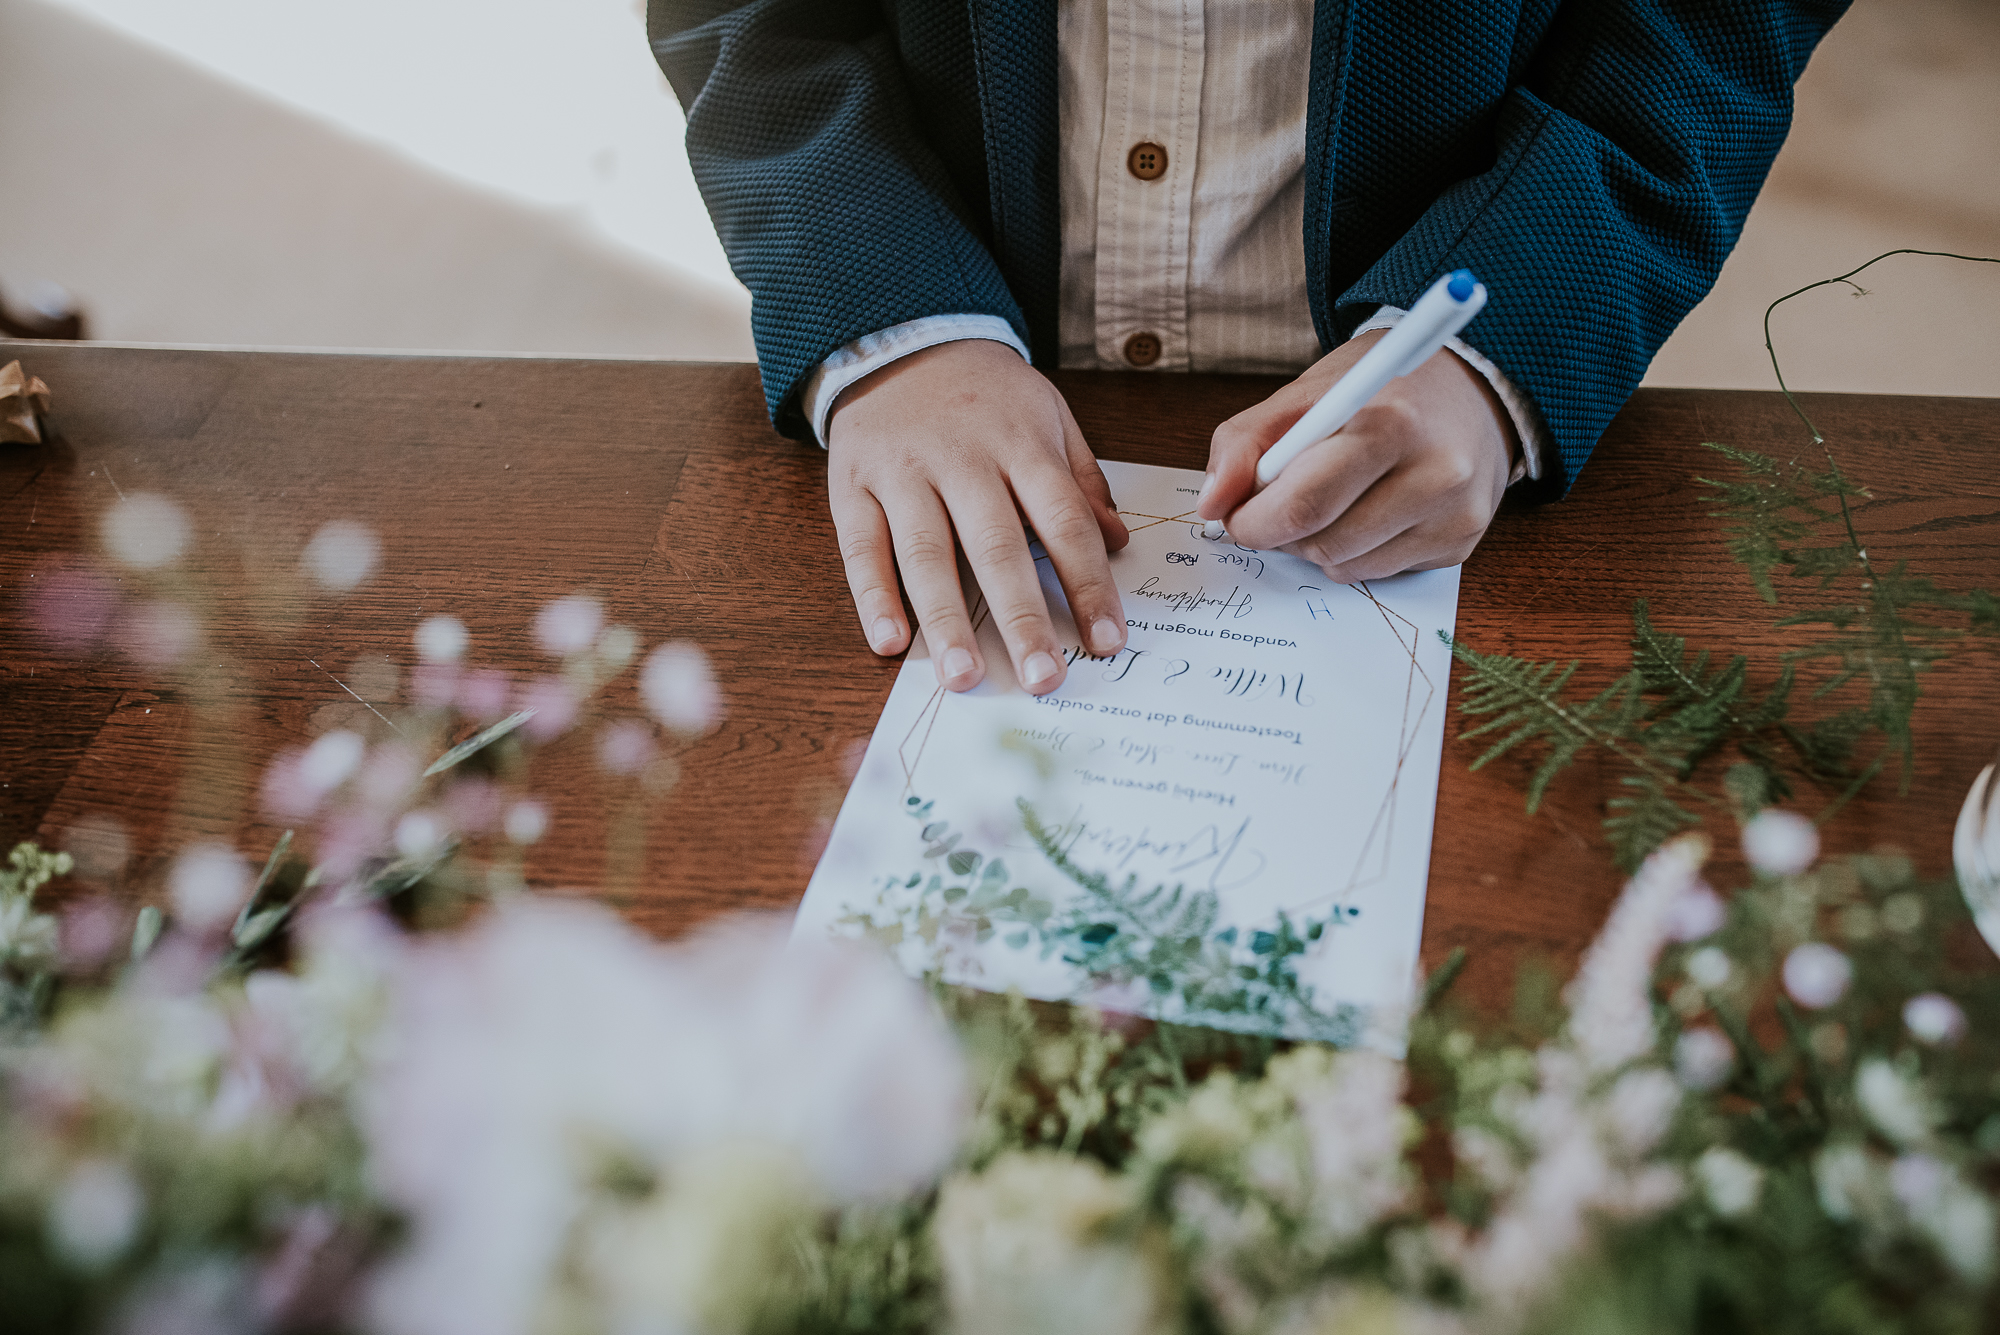 Het ondertekenen van de kinderakte tijdens de kerkelijke cermonie op de bruiloft. Huwelijksreportage door huwelijksfotograaf Nickie Fotografie uit Dokkum.